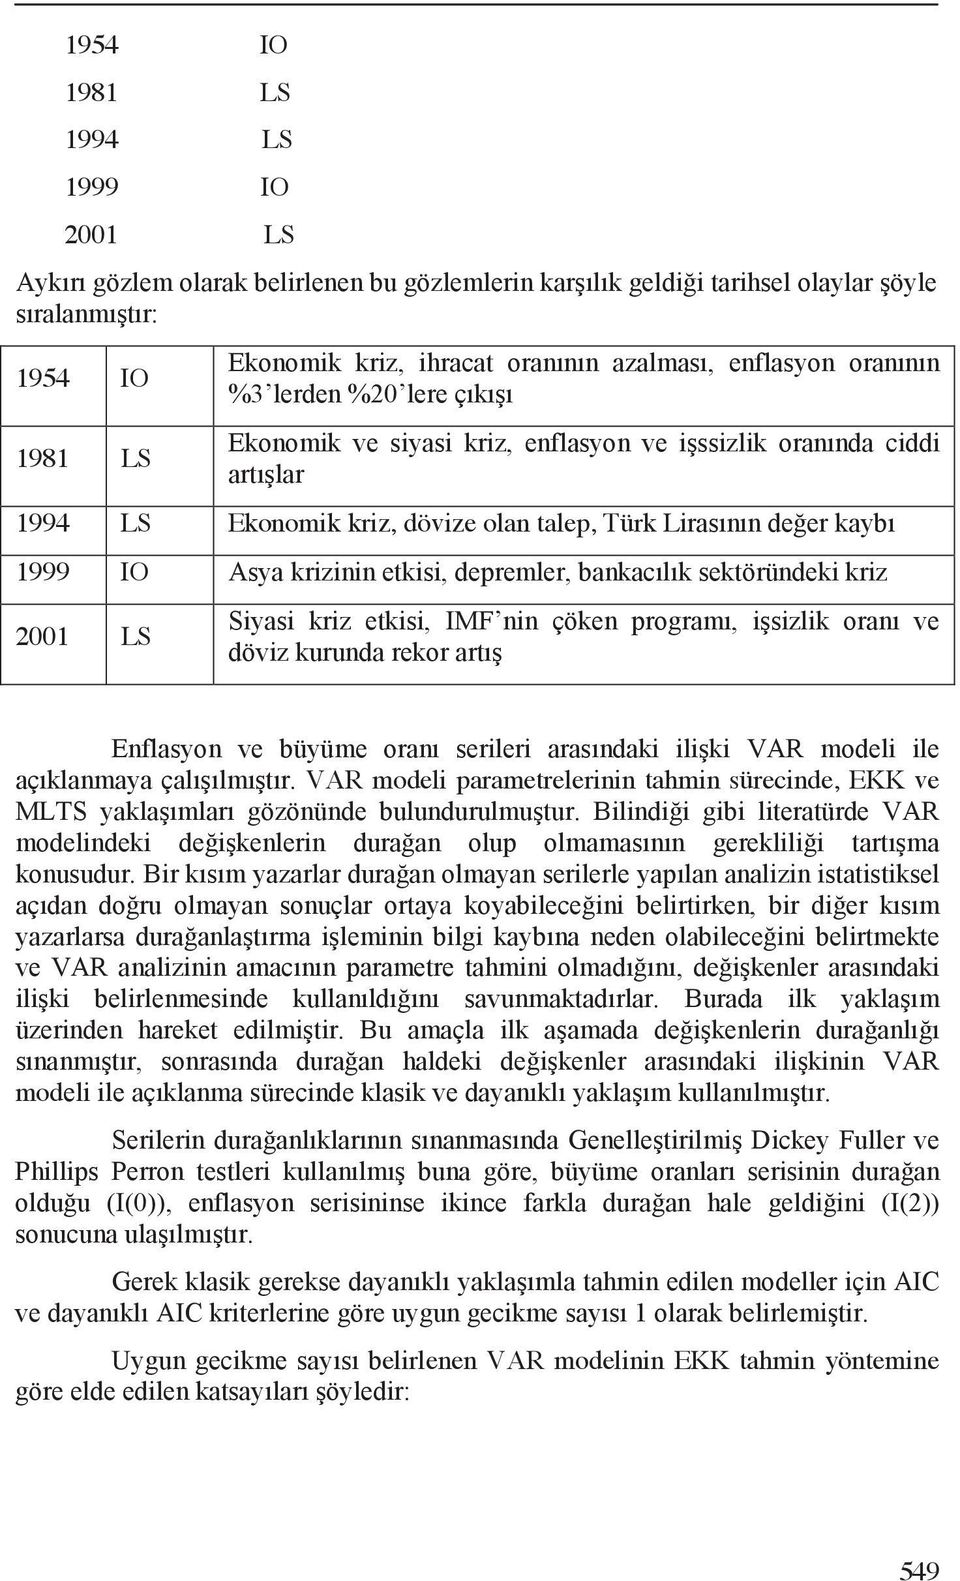 2001 LS VAR modeli paramerelerinin ahmin sürecinde, EKK